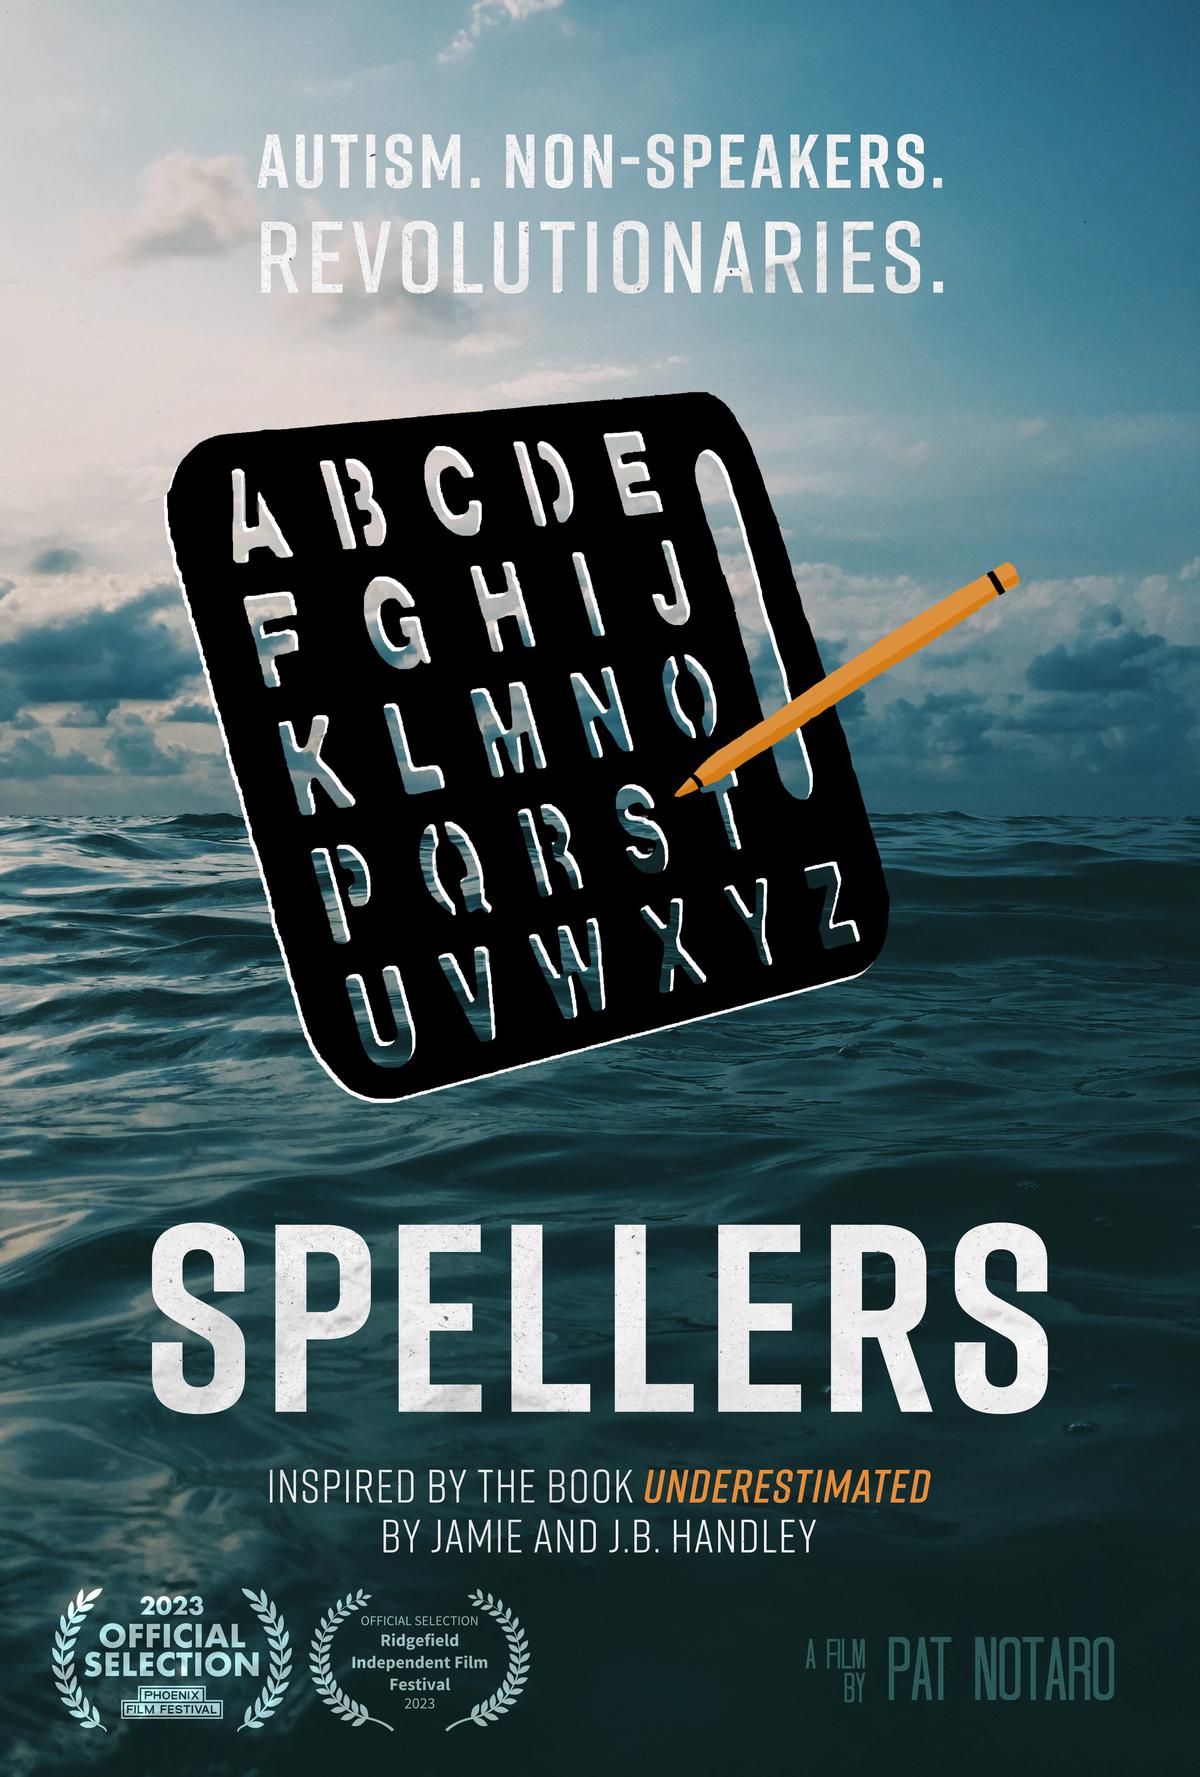 SPELLERS movie poster